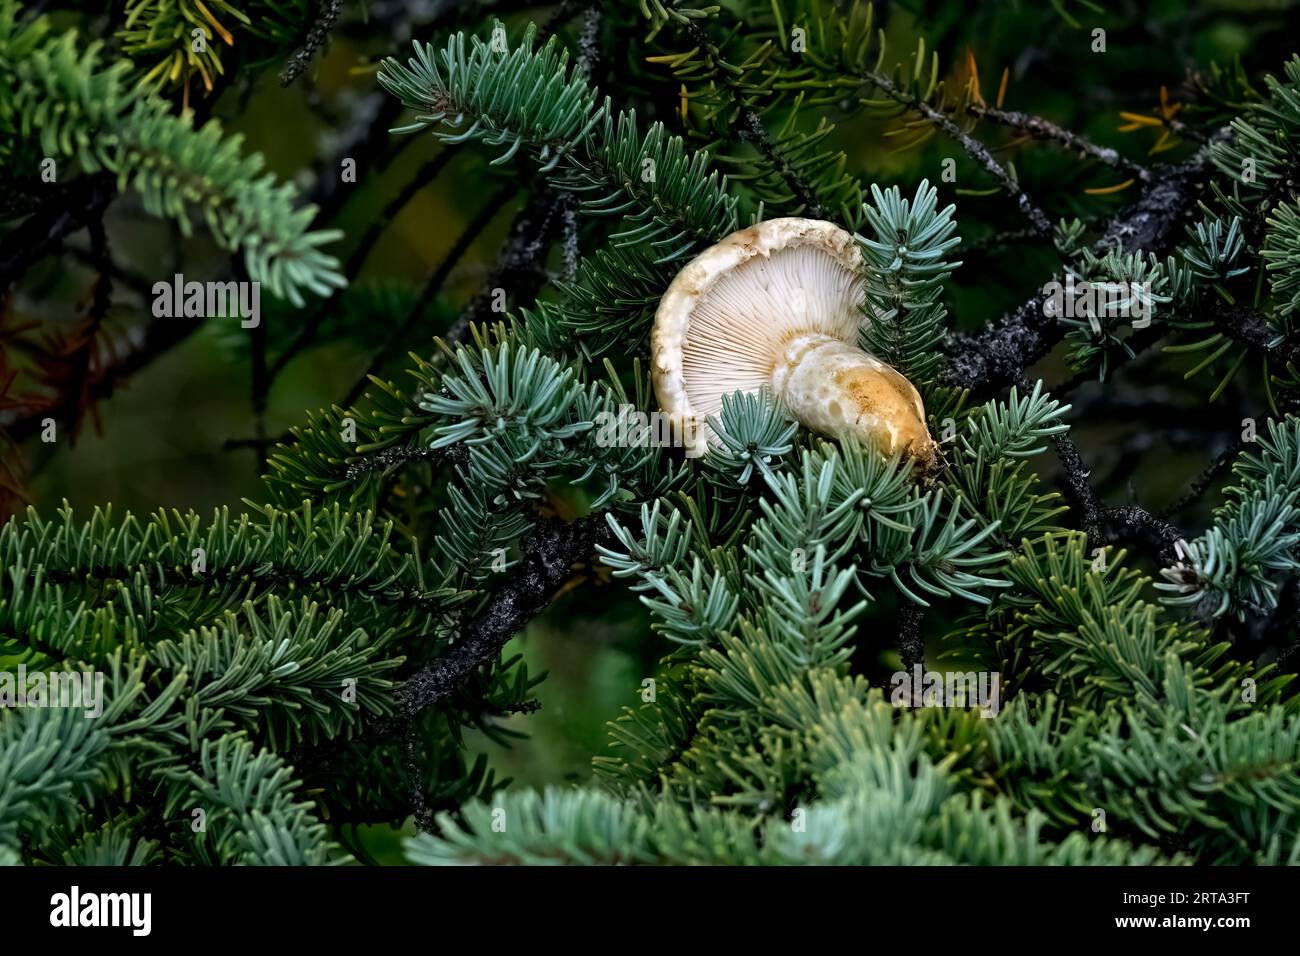 Ein Pilz, der von einem Eichhörnchen in einer Fichte gelagert wurde, um für die bevorstehende Winterversorgung zu trocknen Stockfoto